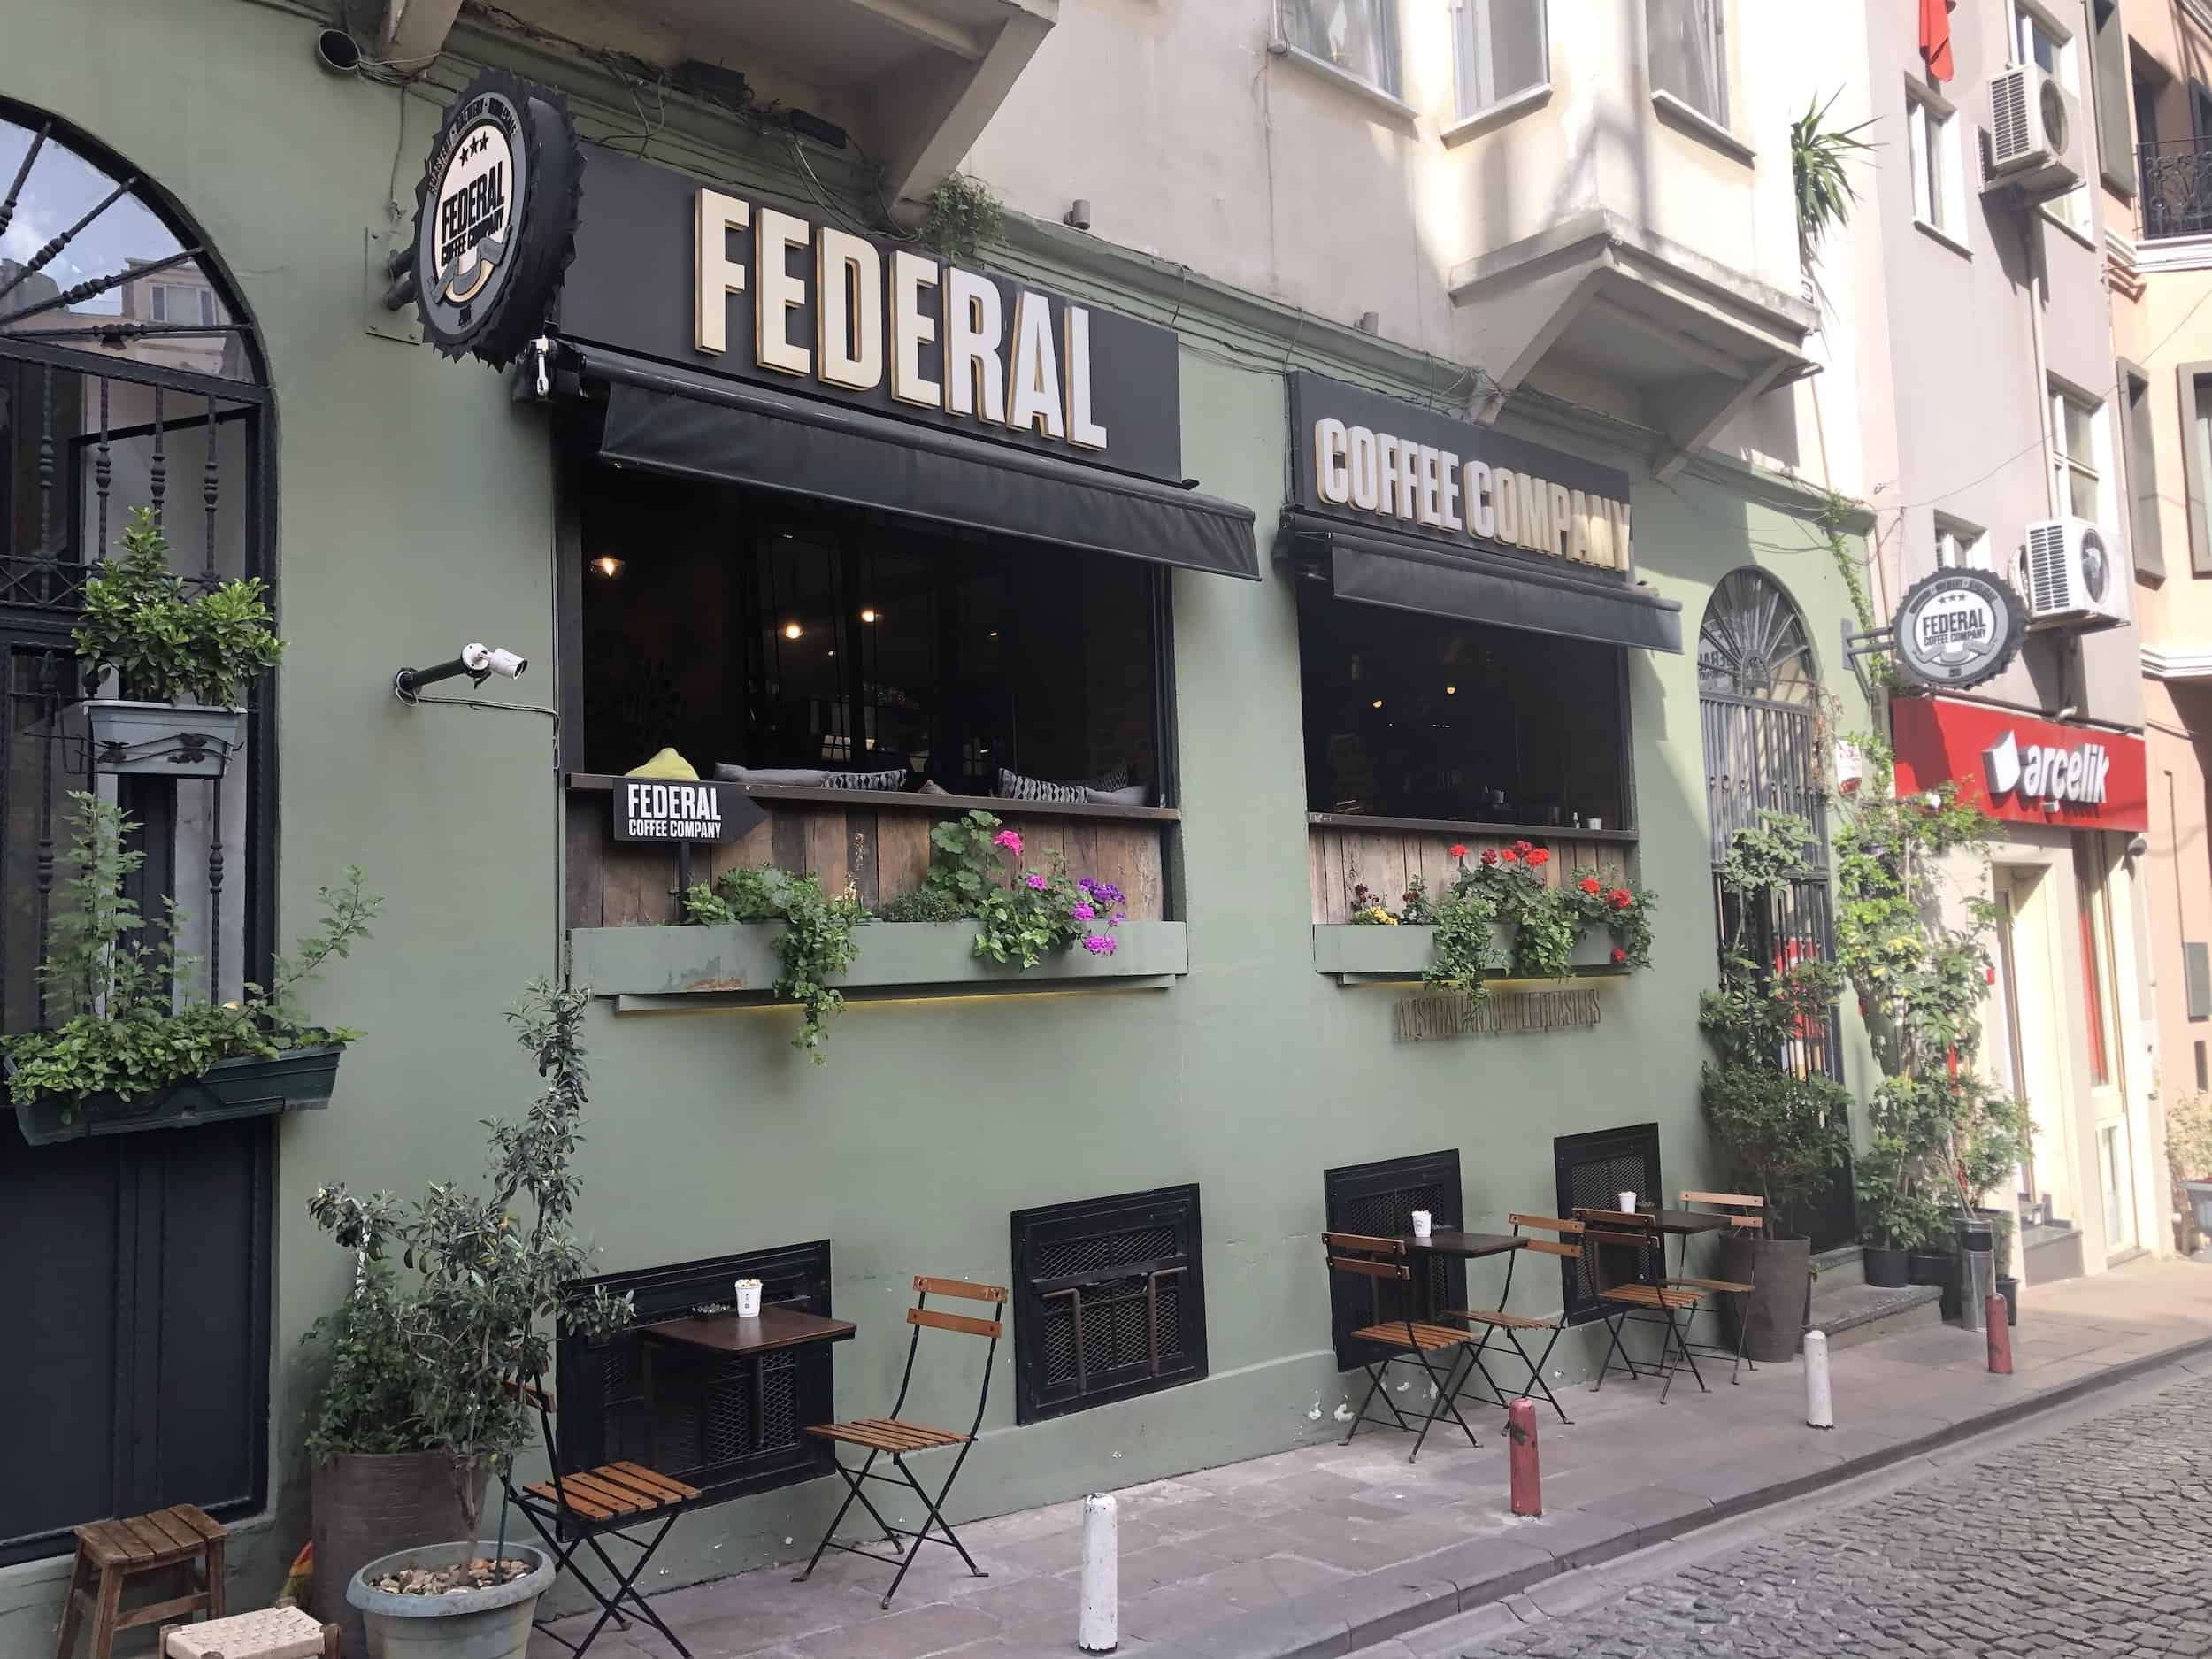 Federal Coffee Company in Galata, Istanbul, Turkey